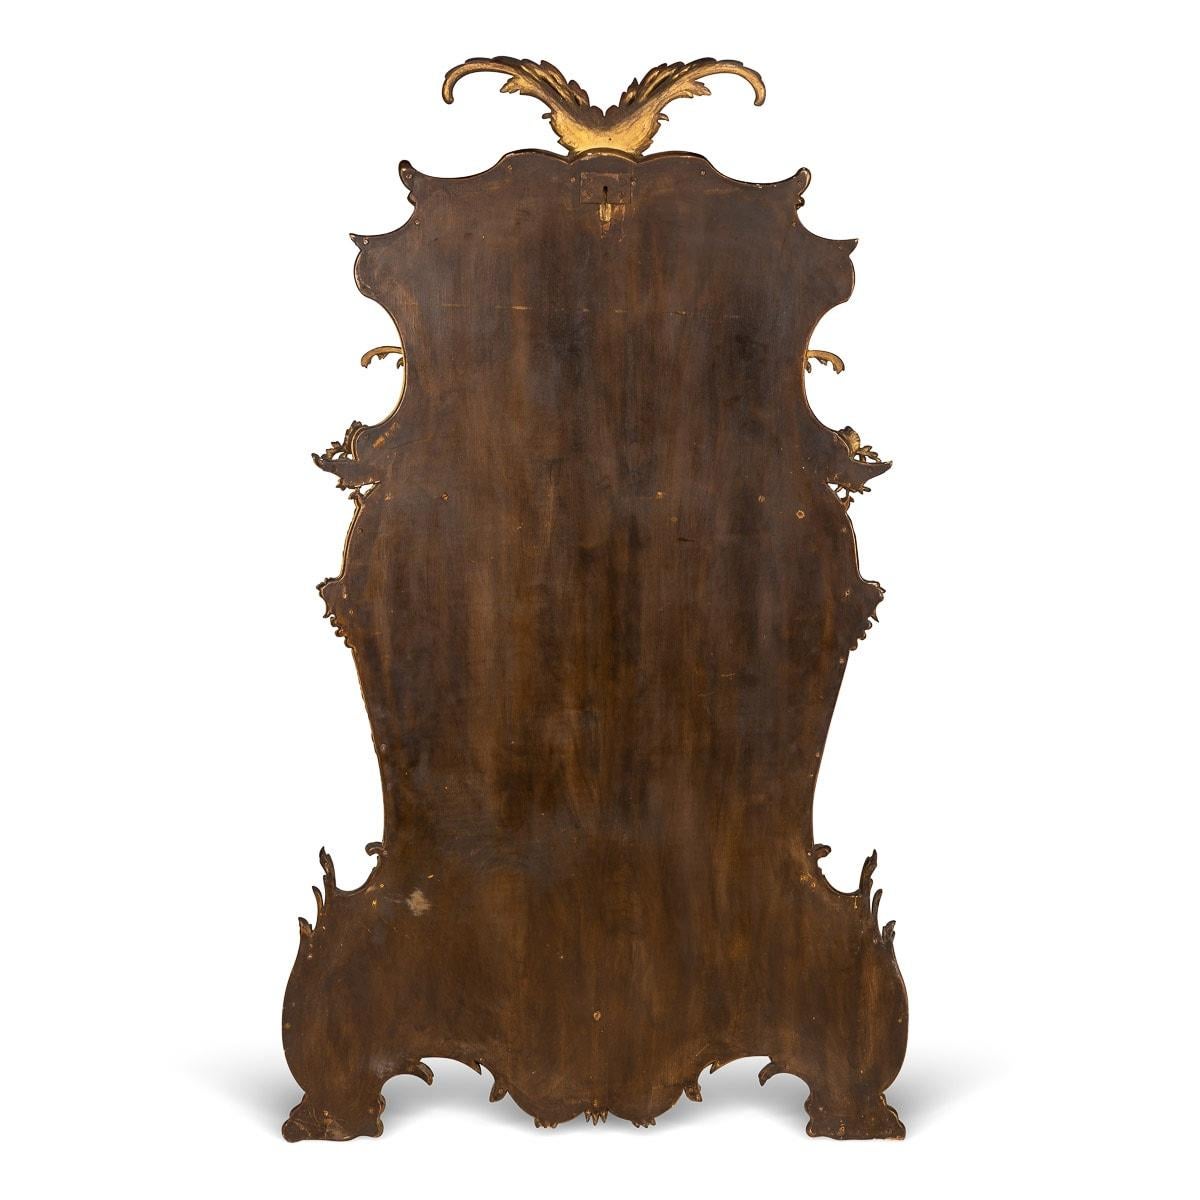 Antike Französisch Mitte des 19. Jahrhunderts Rokoko-Stil geschnitzt vergoldetem Holz Spiegel, die Grenzen mit stilisierten scrolling Laub verziert, der Boden mit Rollen, Blumen und Muscheln verziert.

CONDIT
In gutem Zustand - altersgemäße